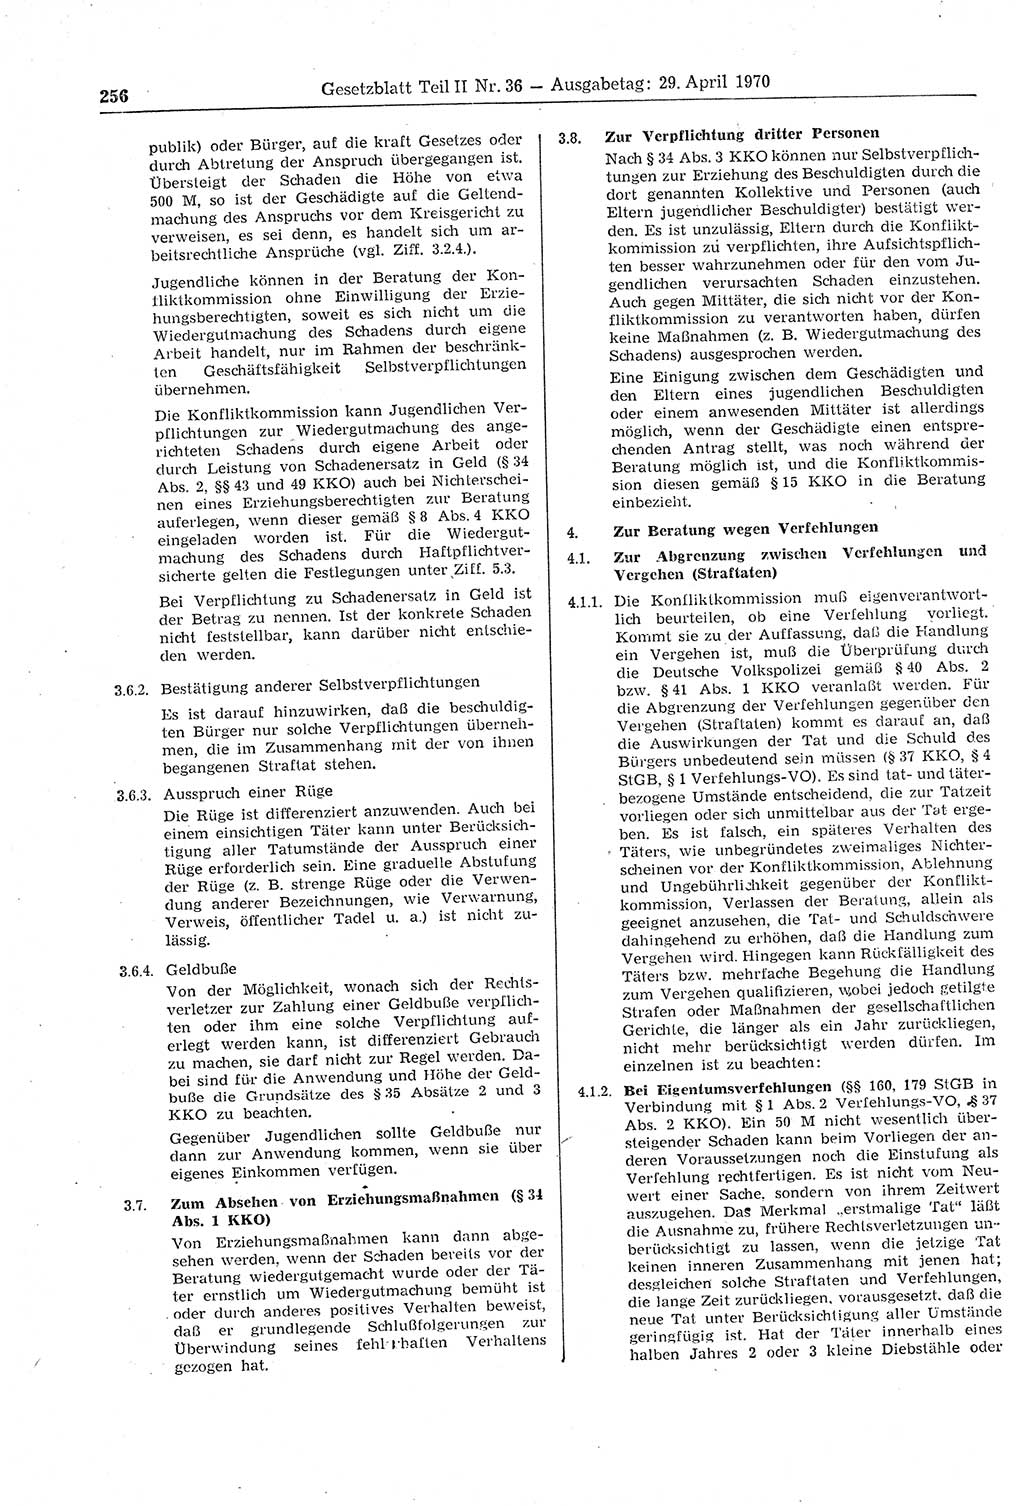 Gesetzblatt (GBl.) der Deutschen Demokratischen Republik (DDR) Teil ⅠⅠ 1970, Seite 256 (GBl. DDR ⅠⅠ 1970, S. 256)